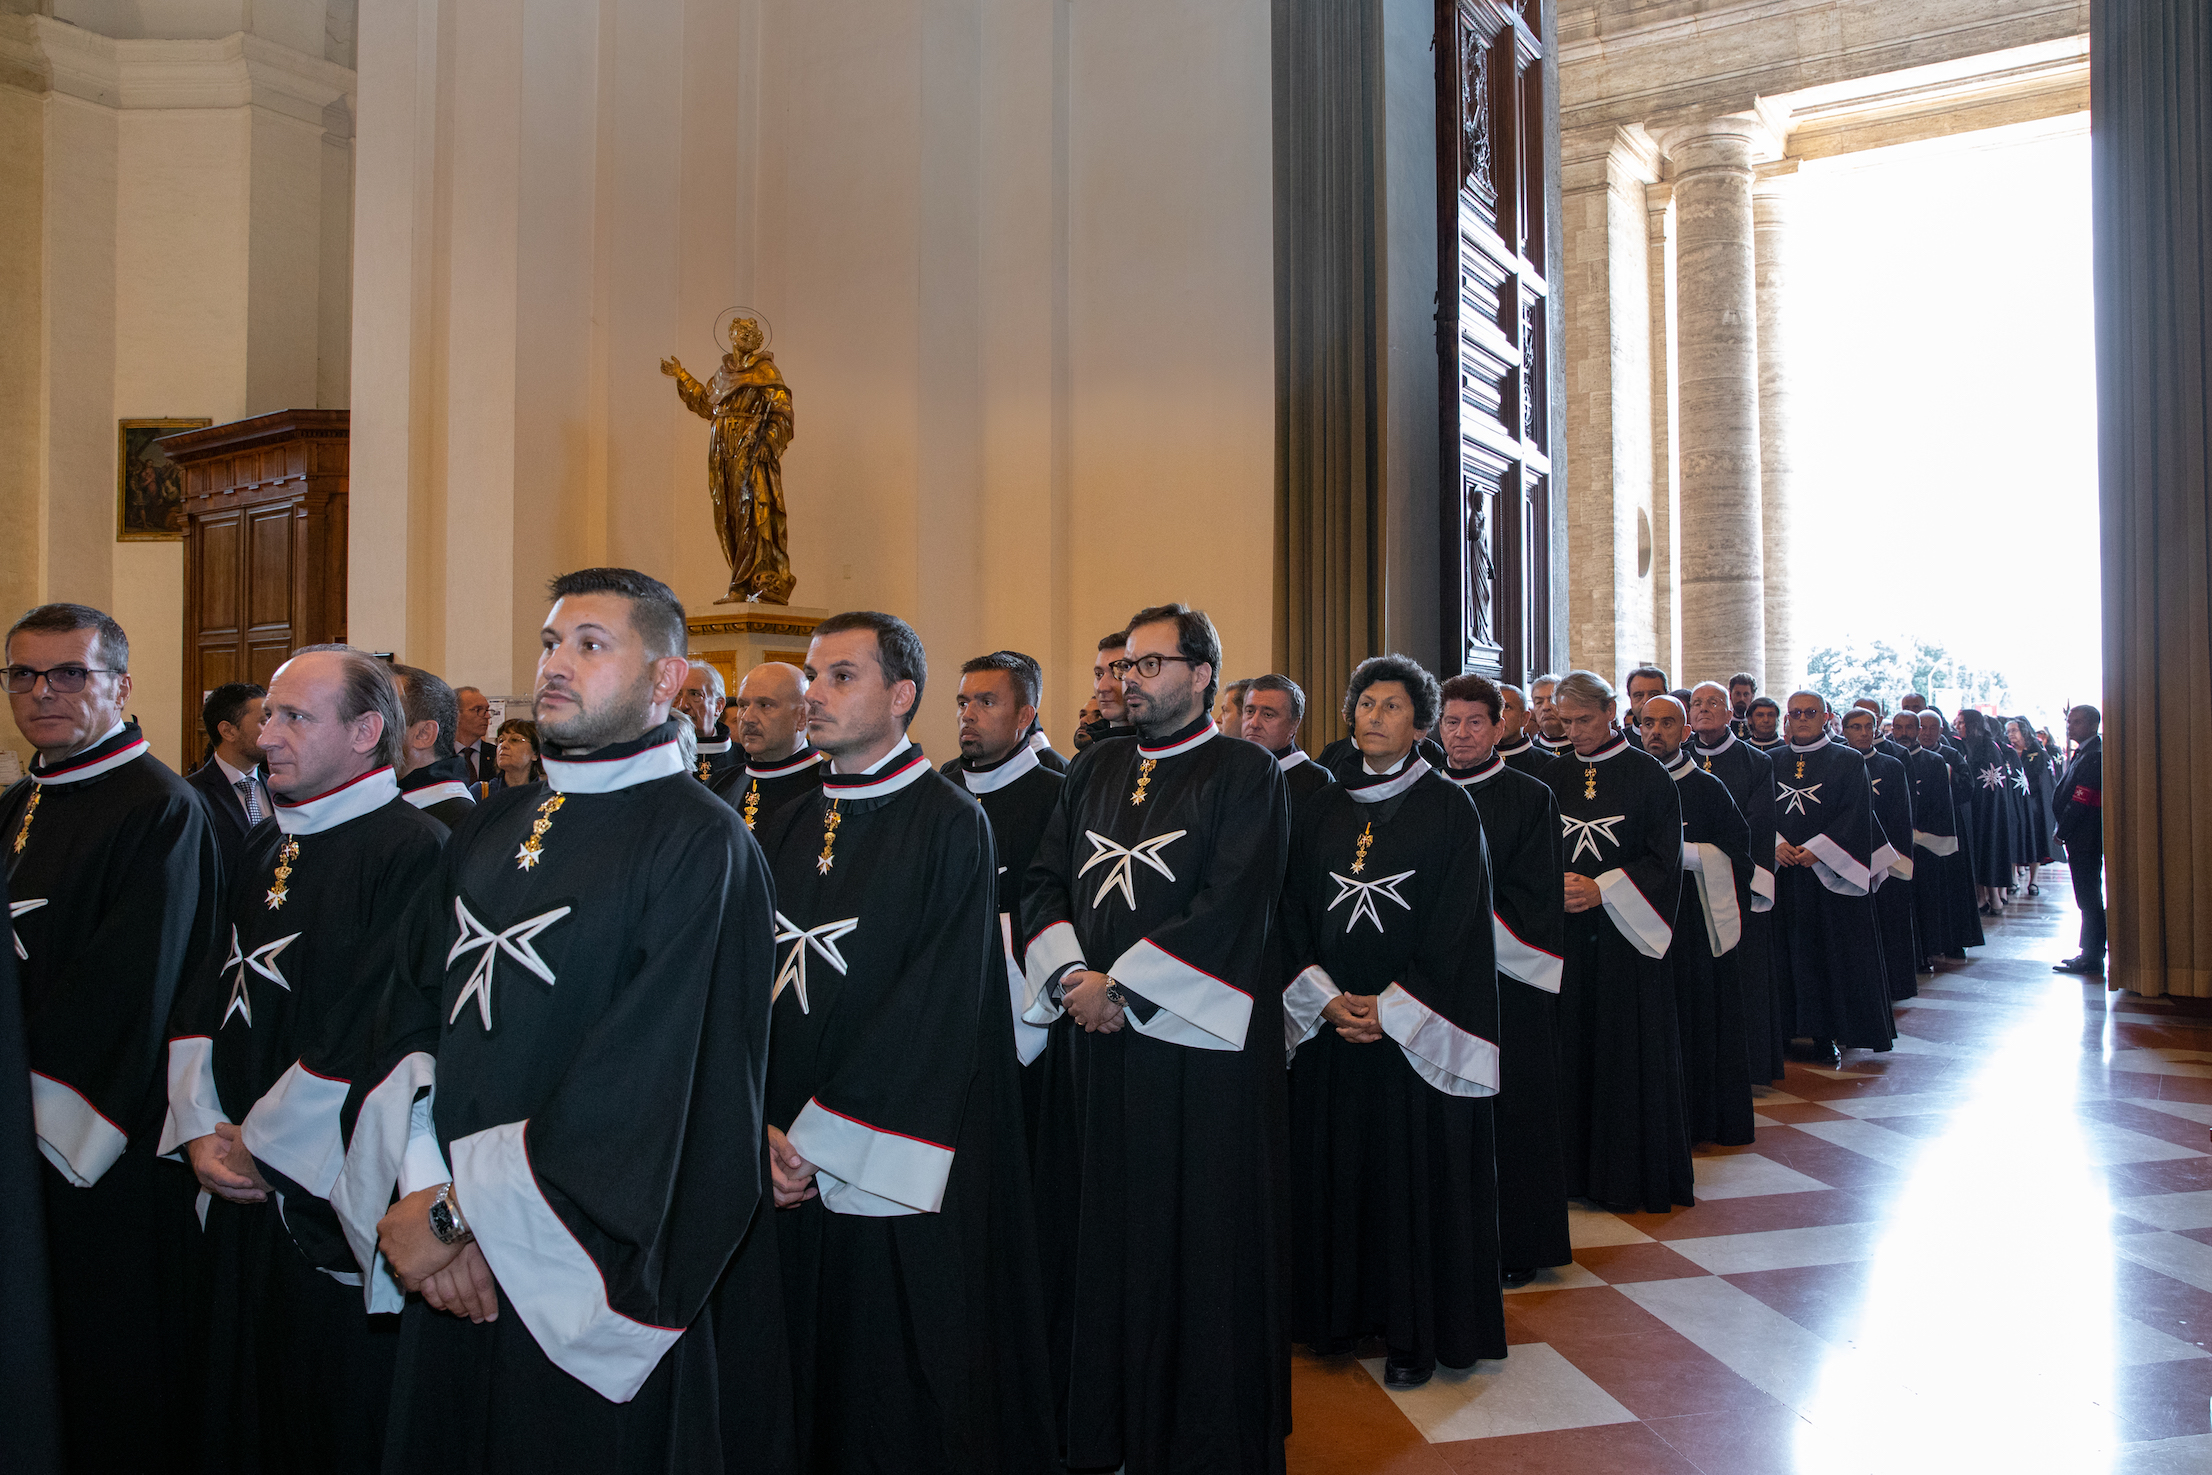 600 Mitglieder des Malteserordens mit dem Großmeister auf Pilgerreise in Assisi.